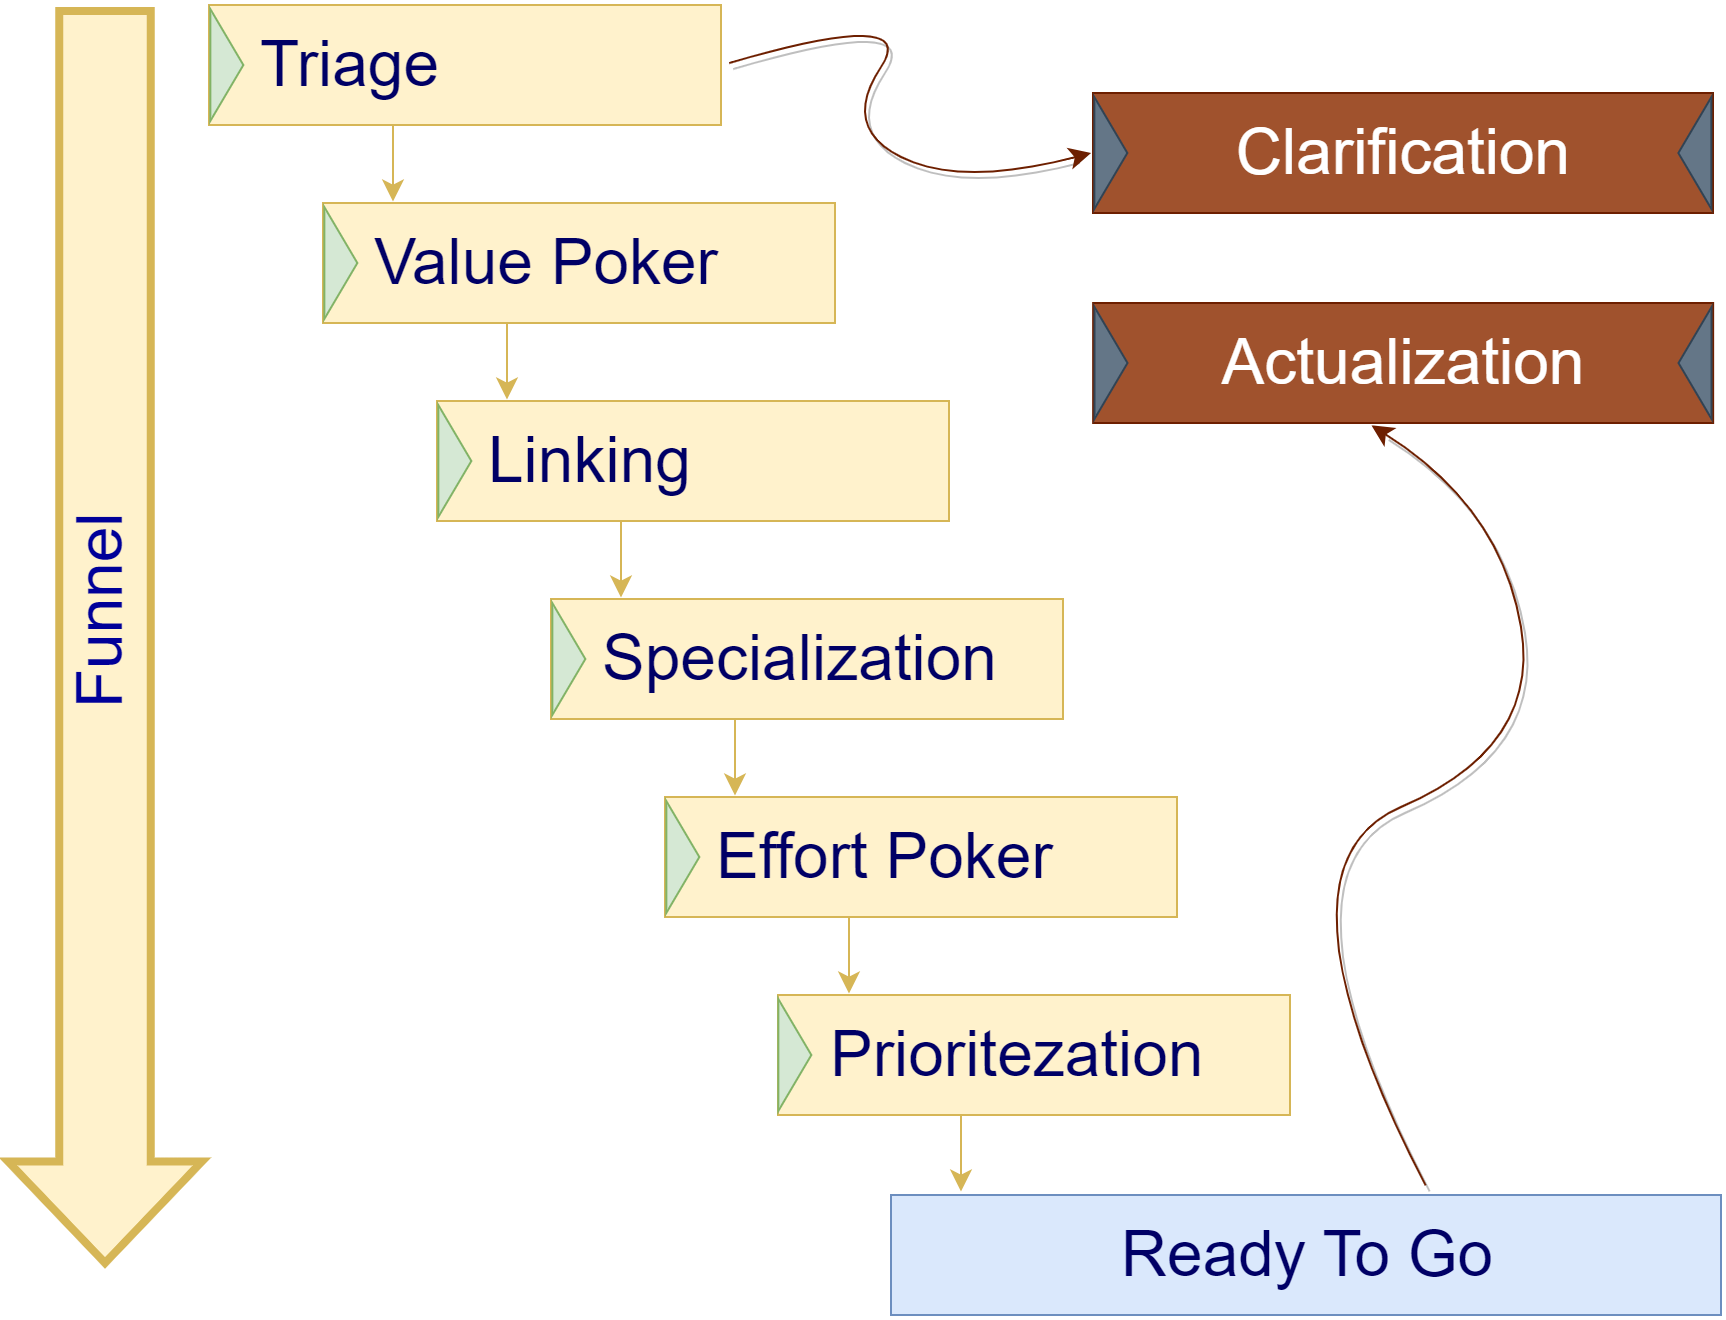 Структура воронки и этапы прохождения задачи через воронку.